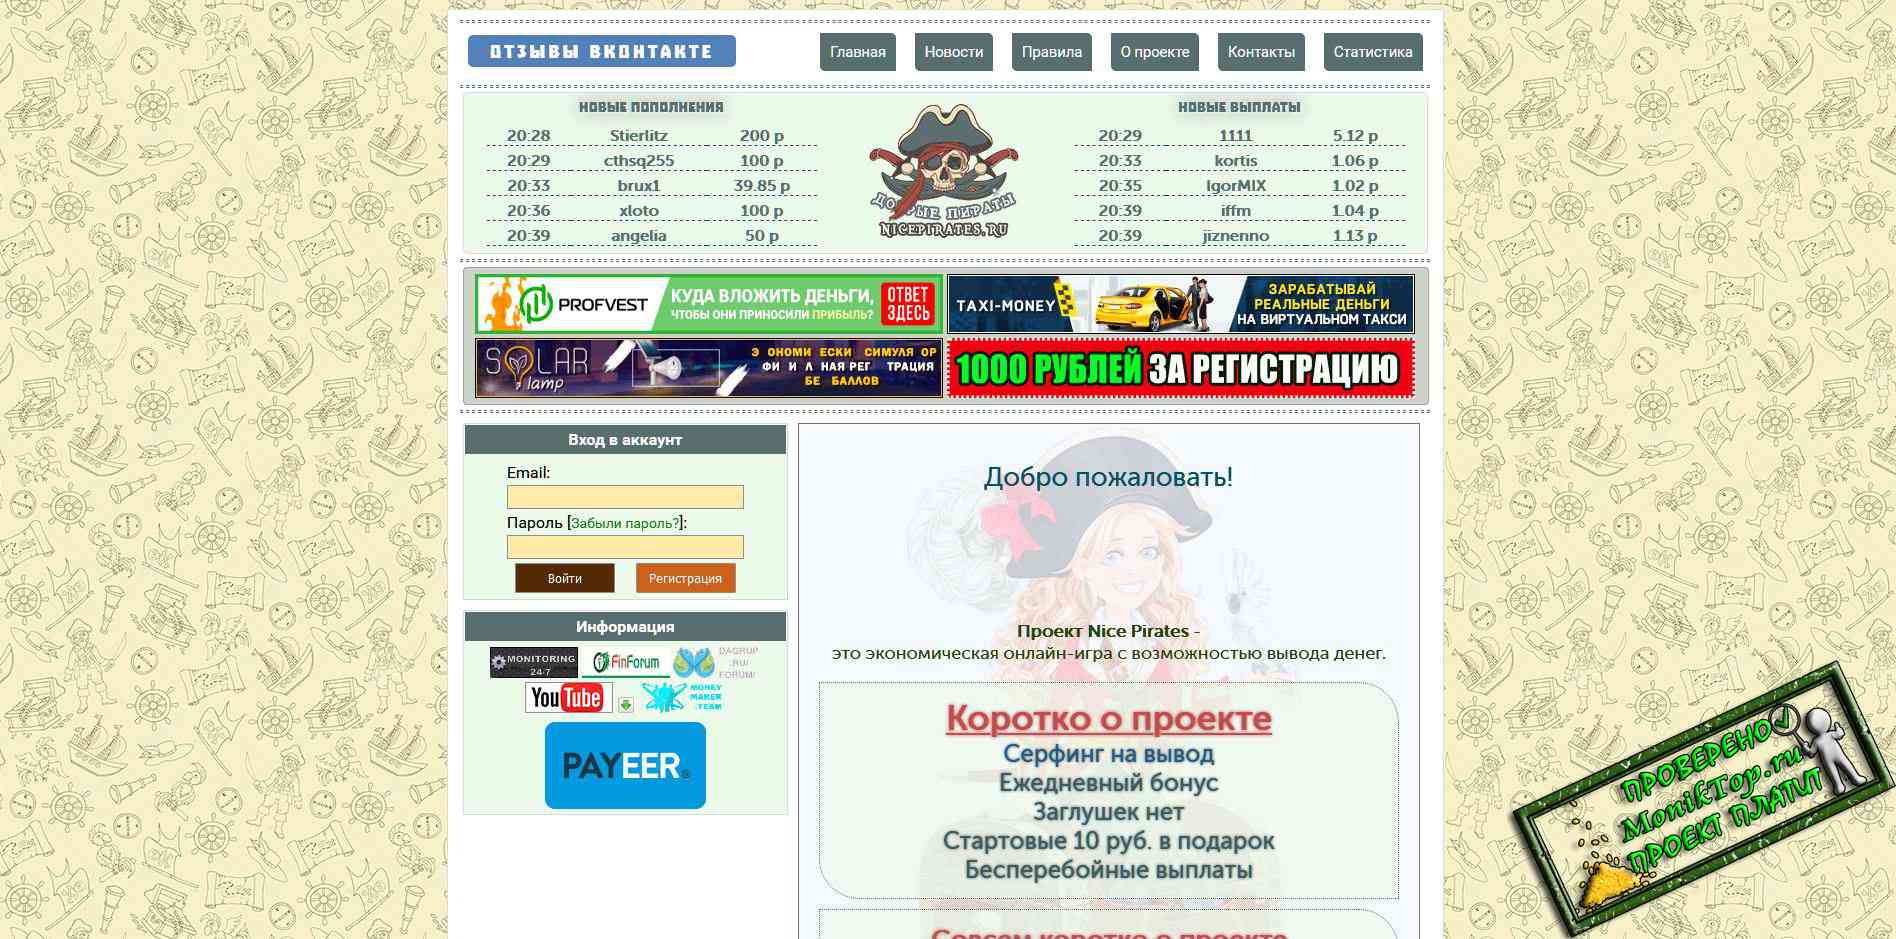 Заработок в телеграмме без вложений с выводом денег на карту на русском сбербанка фото 116